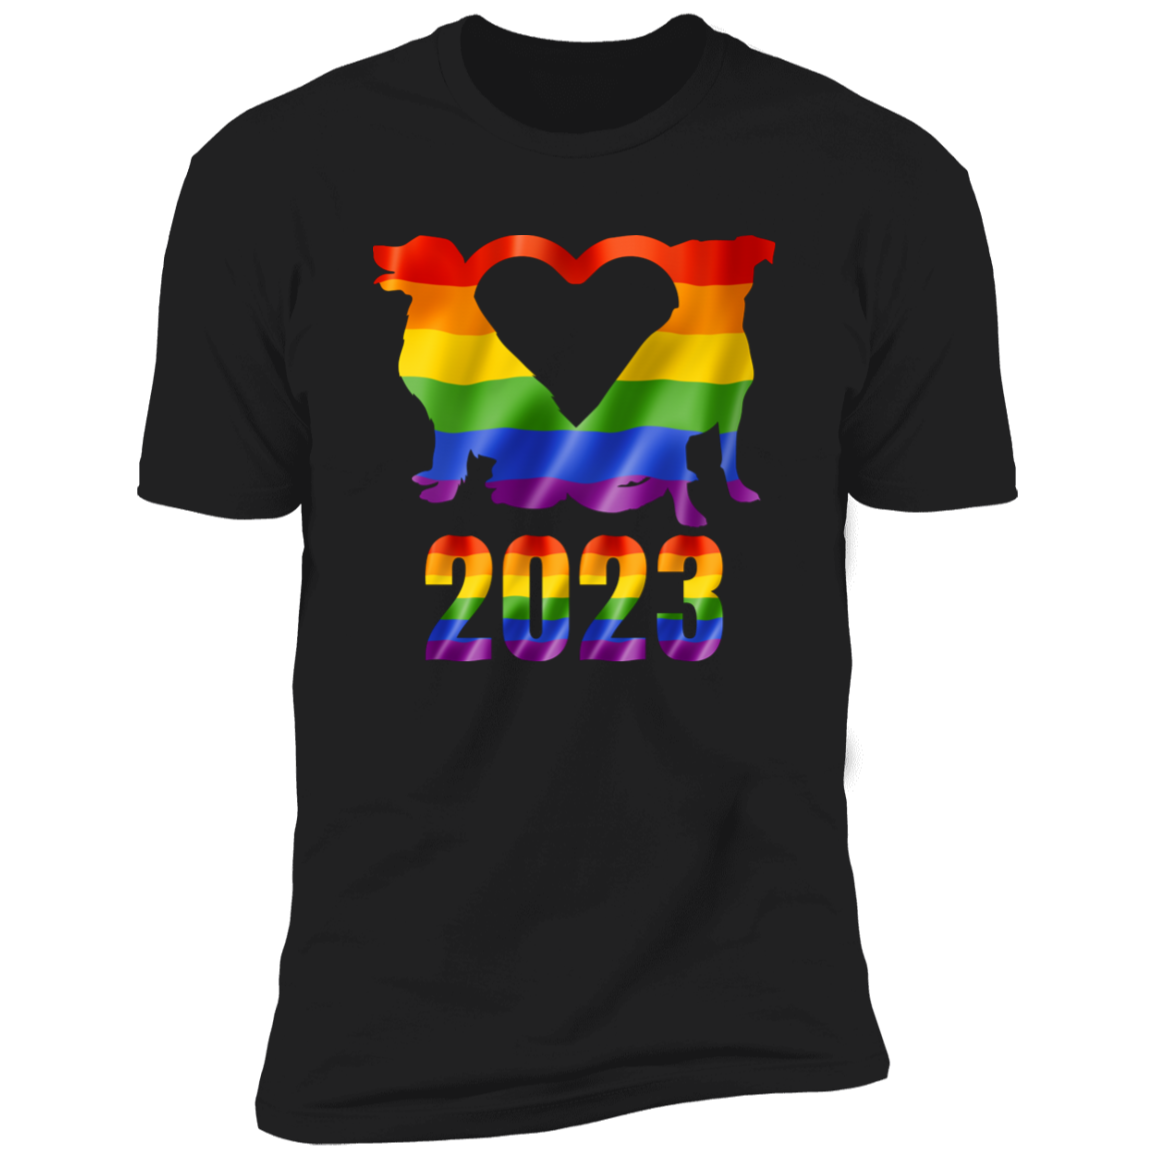 Dog Pride 2023, dog pride dog shirt for humans, in black